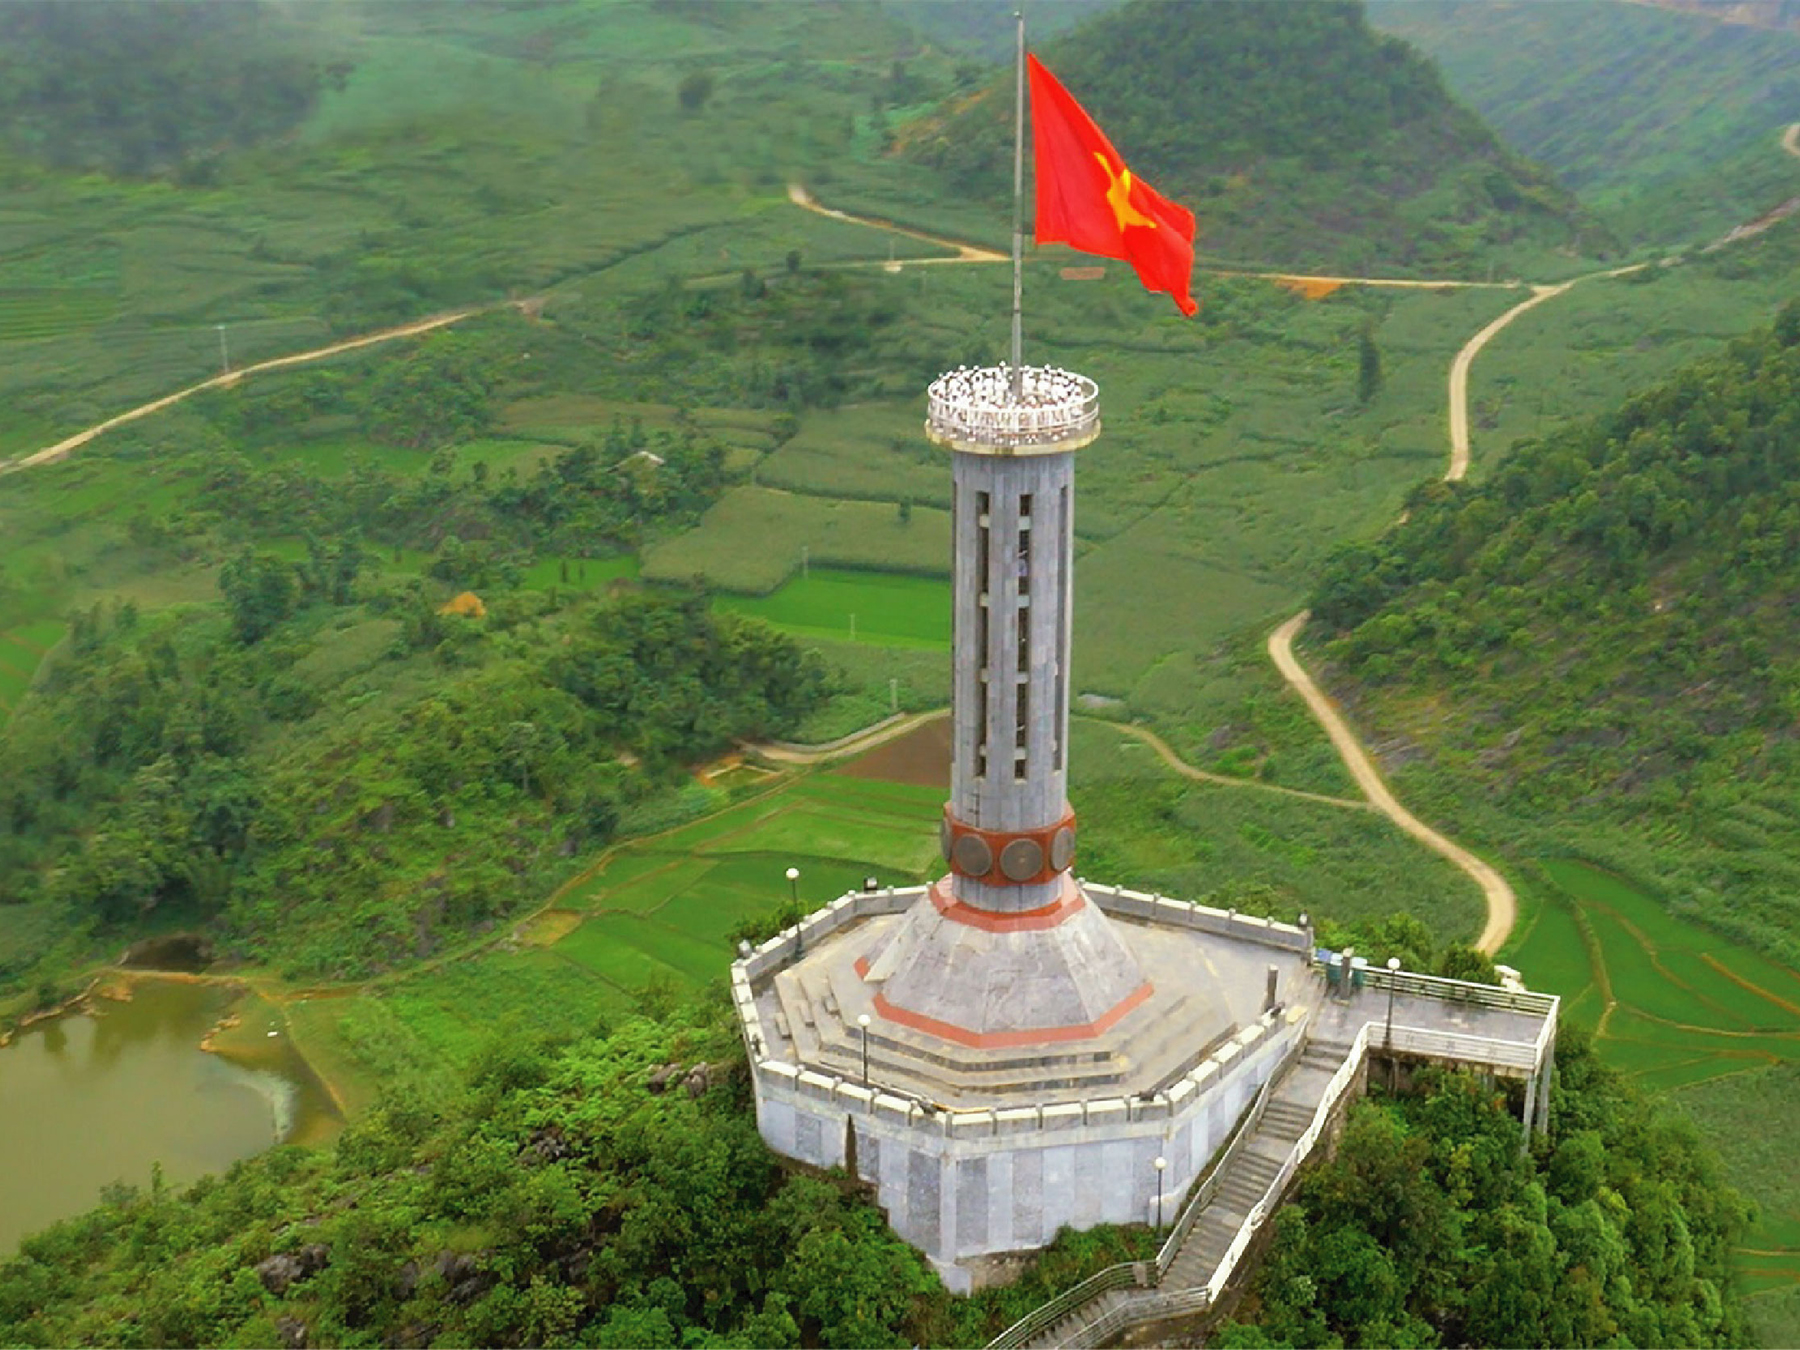 Cột cờ Lung Cu, một biểu tượng quốc gia của Việt Nam, đã được nâng cấp với đầy đủ các tiện ích hiện đại, phục vụ cho các khách du lịch. Chỉ trong vài giây, bạn sẽ được đưa lên đỉnh núi, nơi mà bạn có thể ngắm nhìn toàn cảnh của cả nước Việt Nam. Đây sẽ là trải nghiệm không thể quên cho bạn.